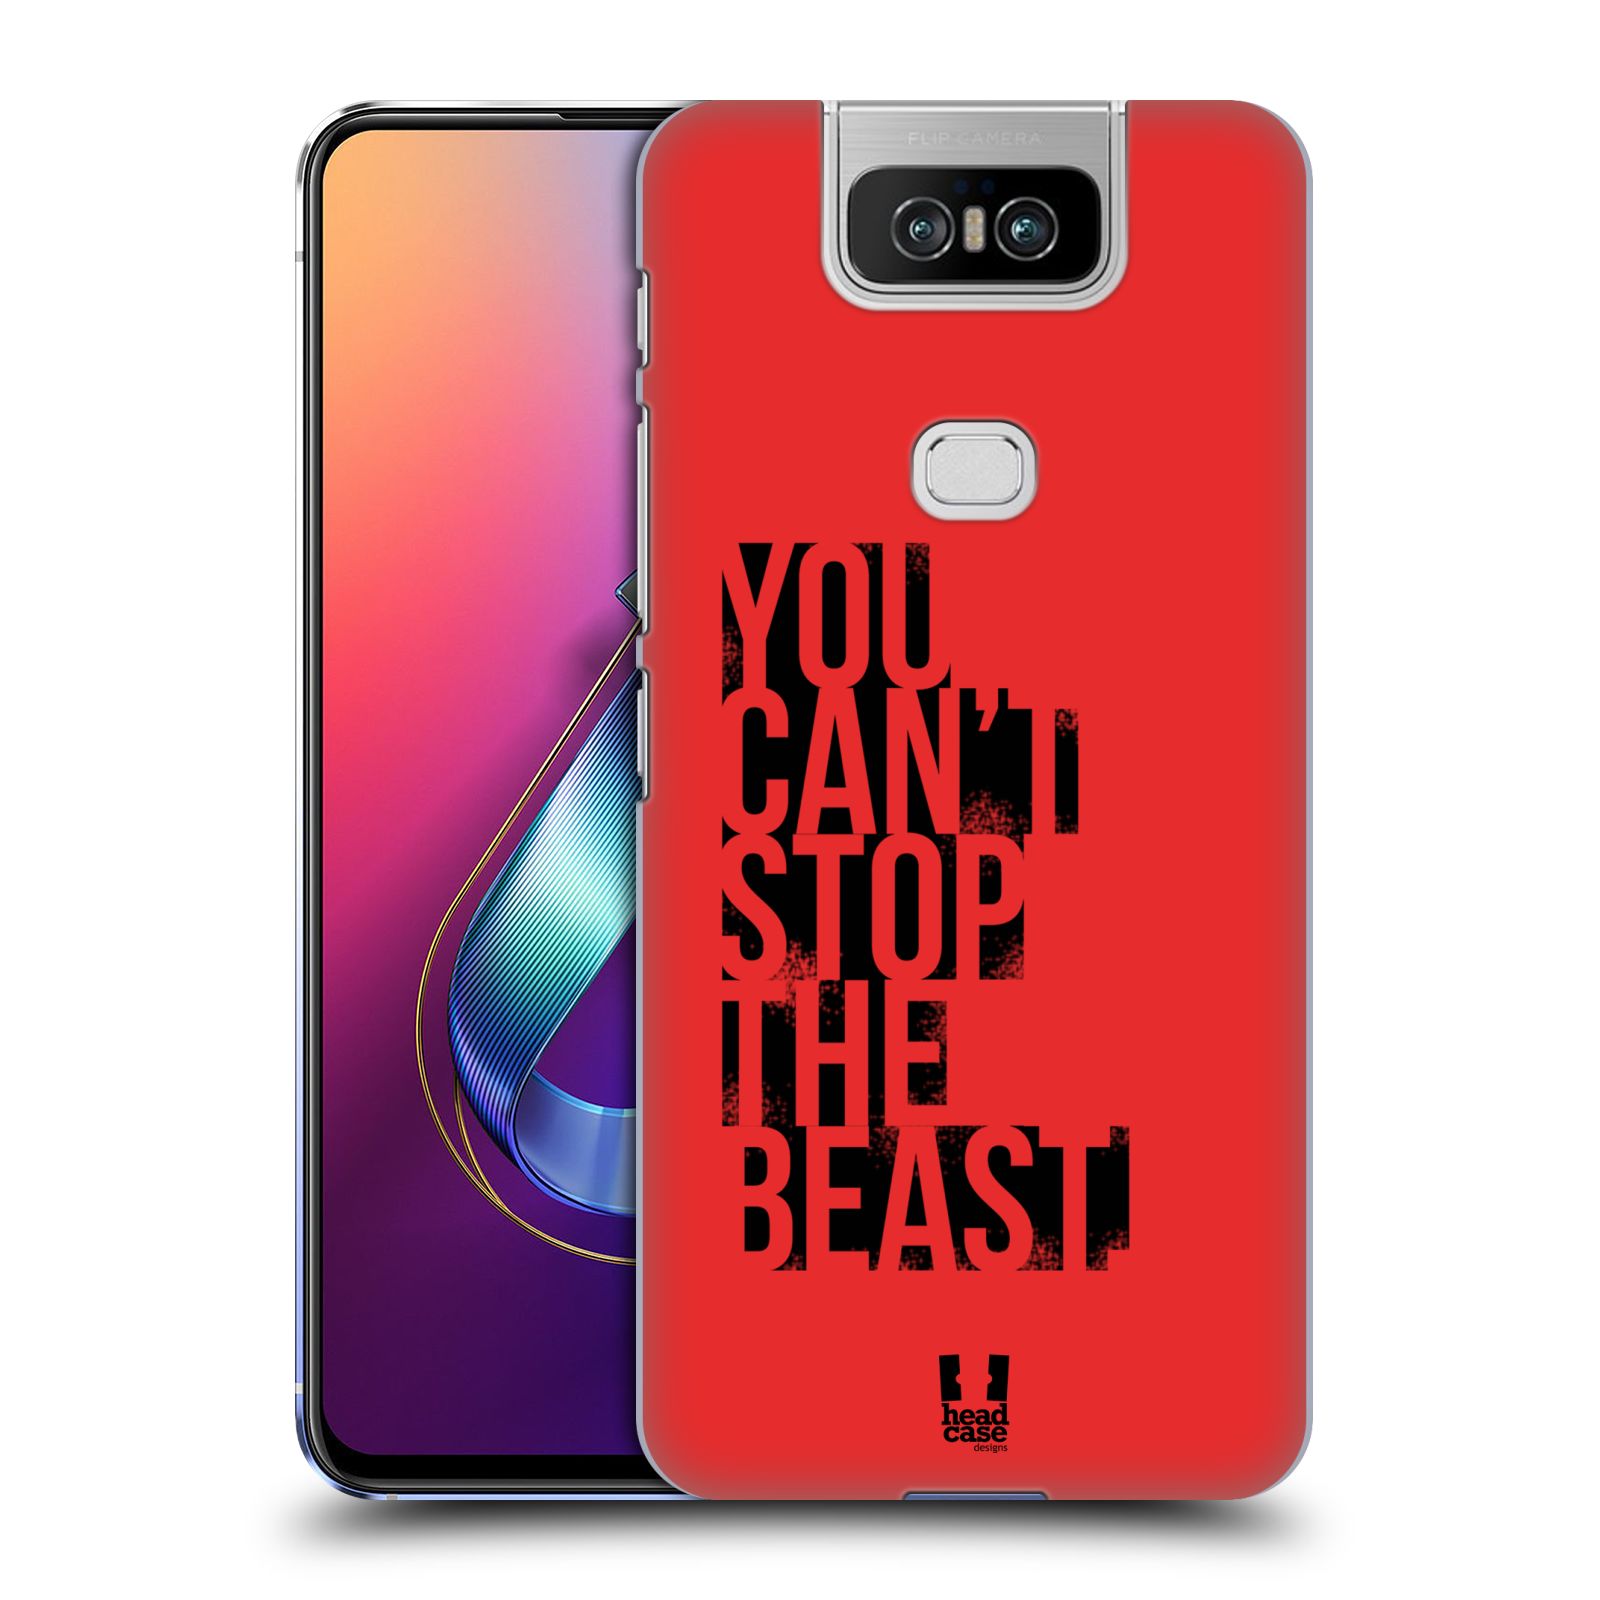 Pouzdro na mobil Asus Zenfone 6 ZS630KL - HEAD CASE - Sportovní tématika Beast mode červená